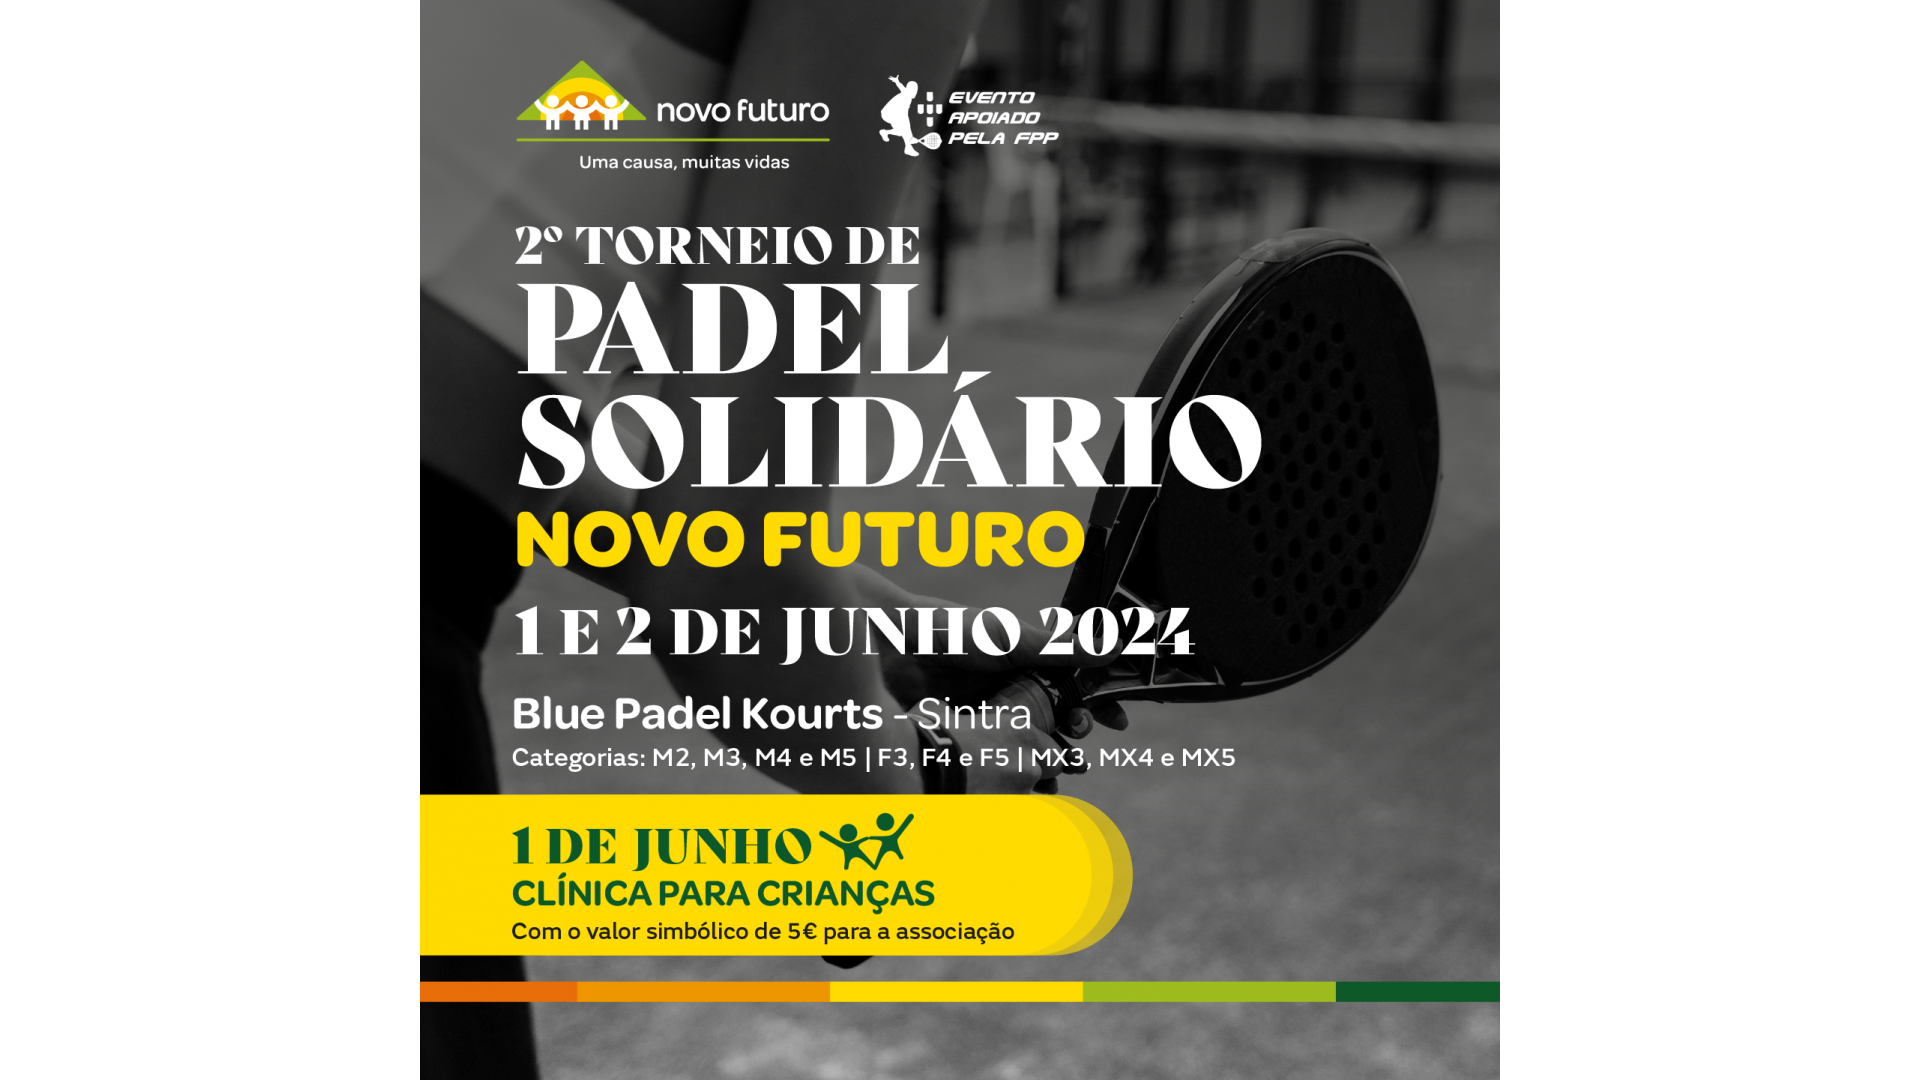 2º Torneio de Padel Solidário - Novo Futuro